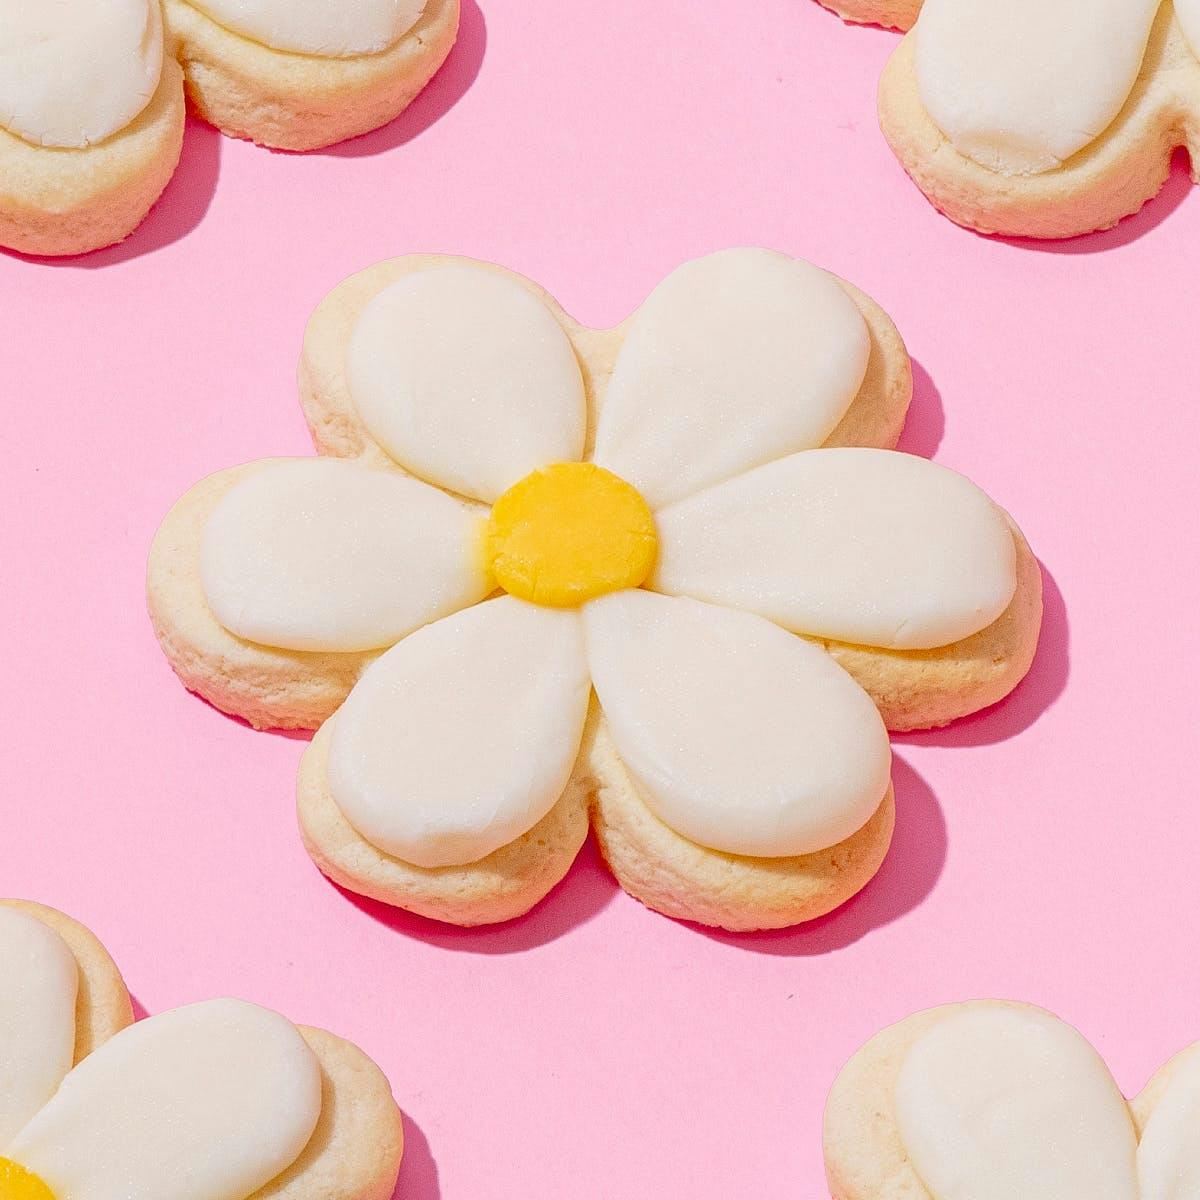 Daisy Sugar Cookies by Elle's Belles Bakery - Alternate image 1